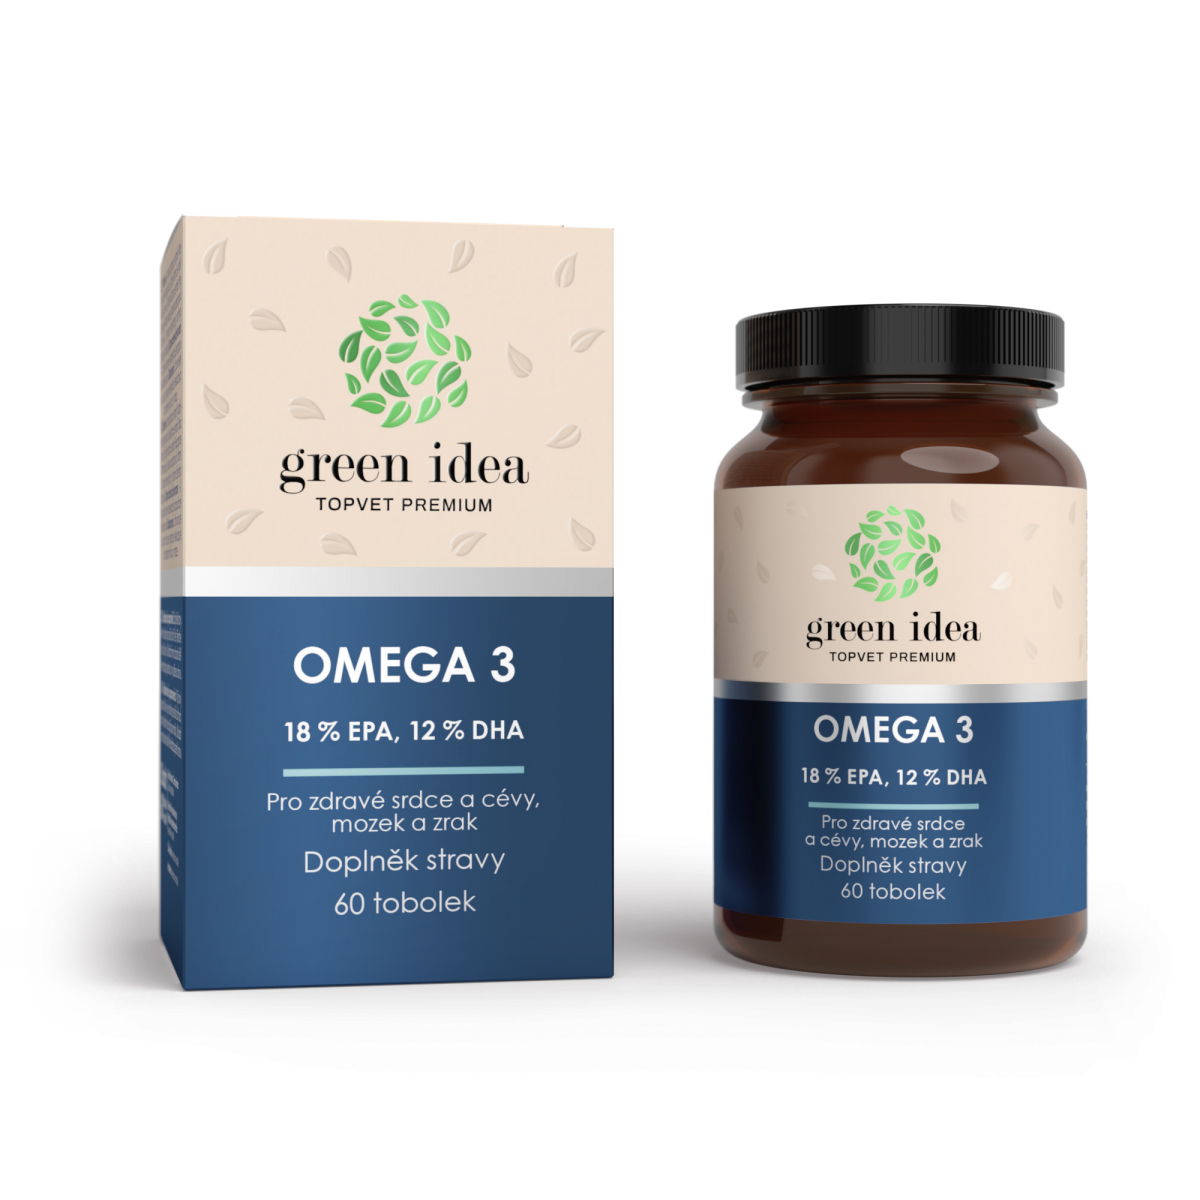 OMEGA 3 - Rybí olej plus - Kapsuly